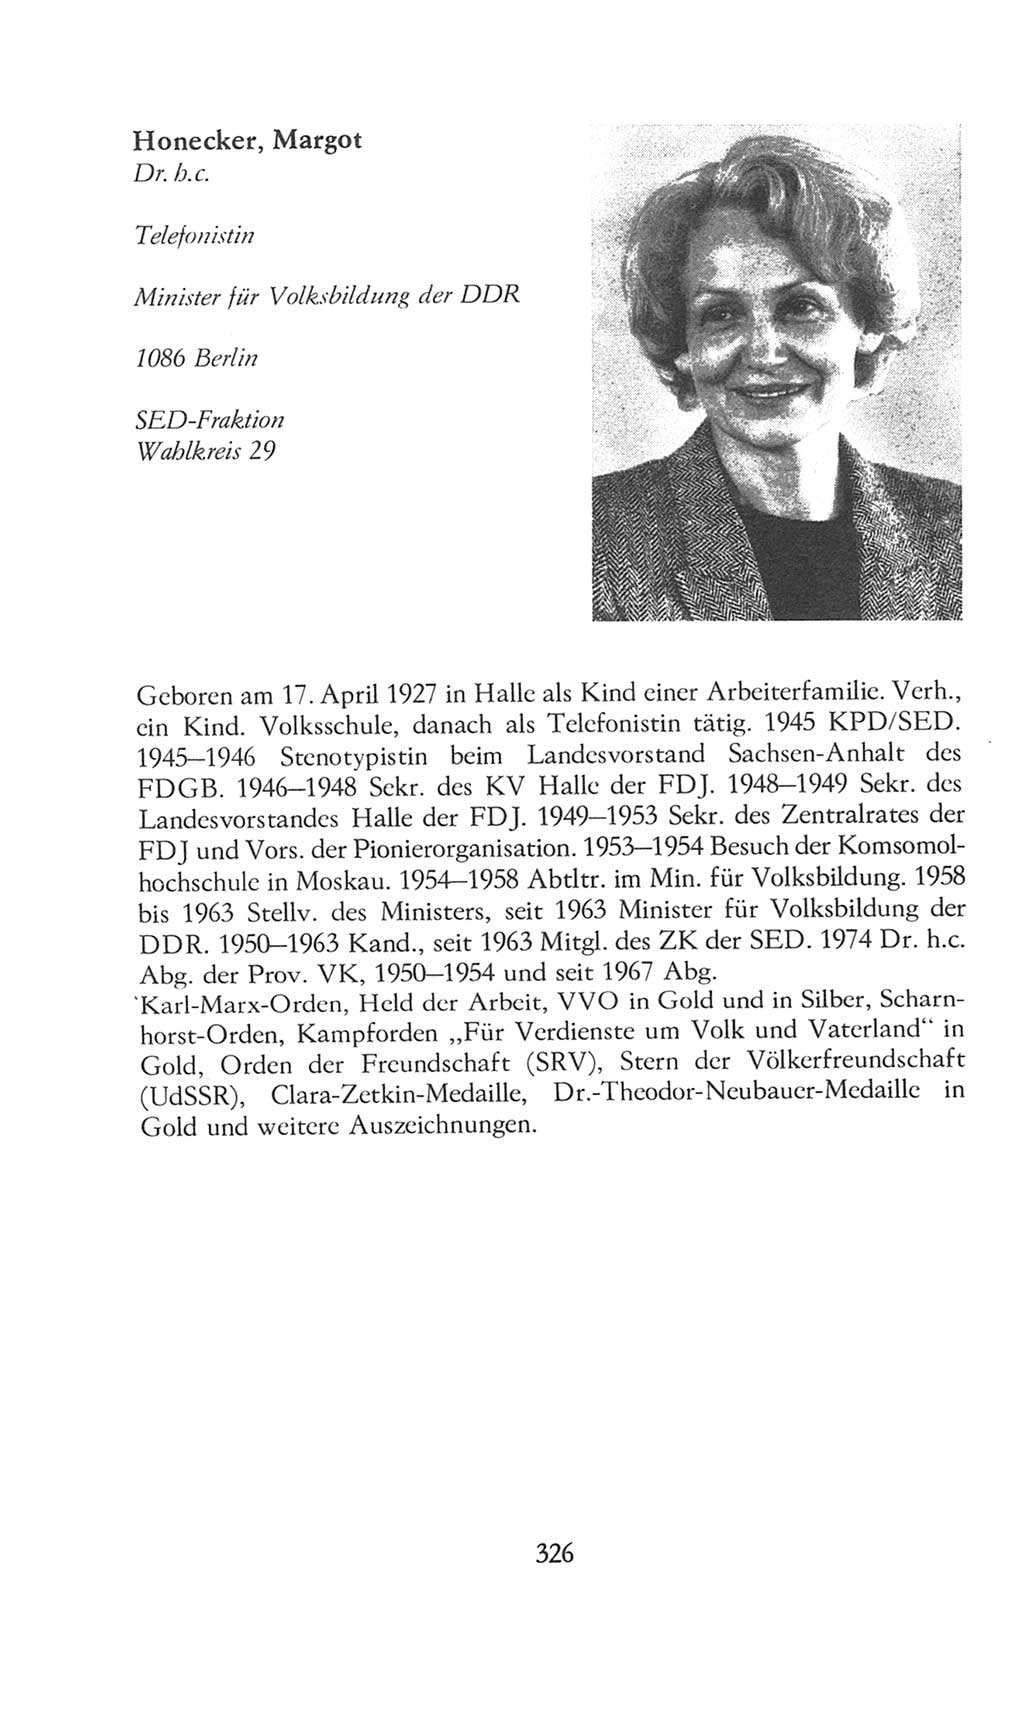 Volkskammer (VK) der Deutschen Demokratischen Republik (DDR), 8. Wahlperiode 1981-1986, Seite 326 (VK. DDR 8. WP. 1981-1986, S. 326)